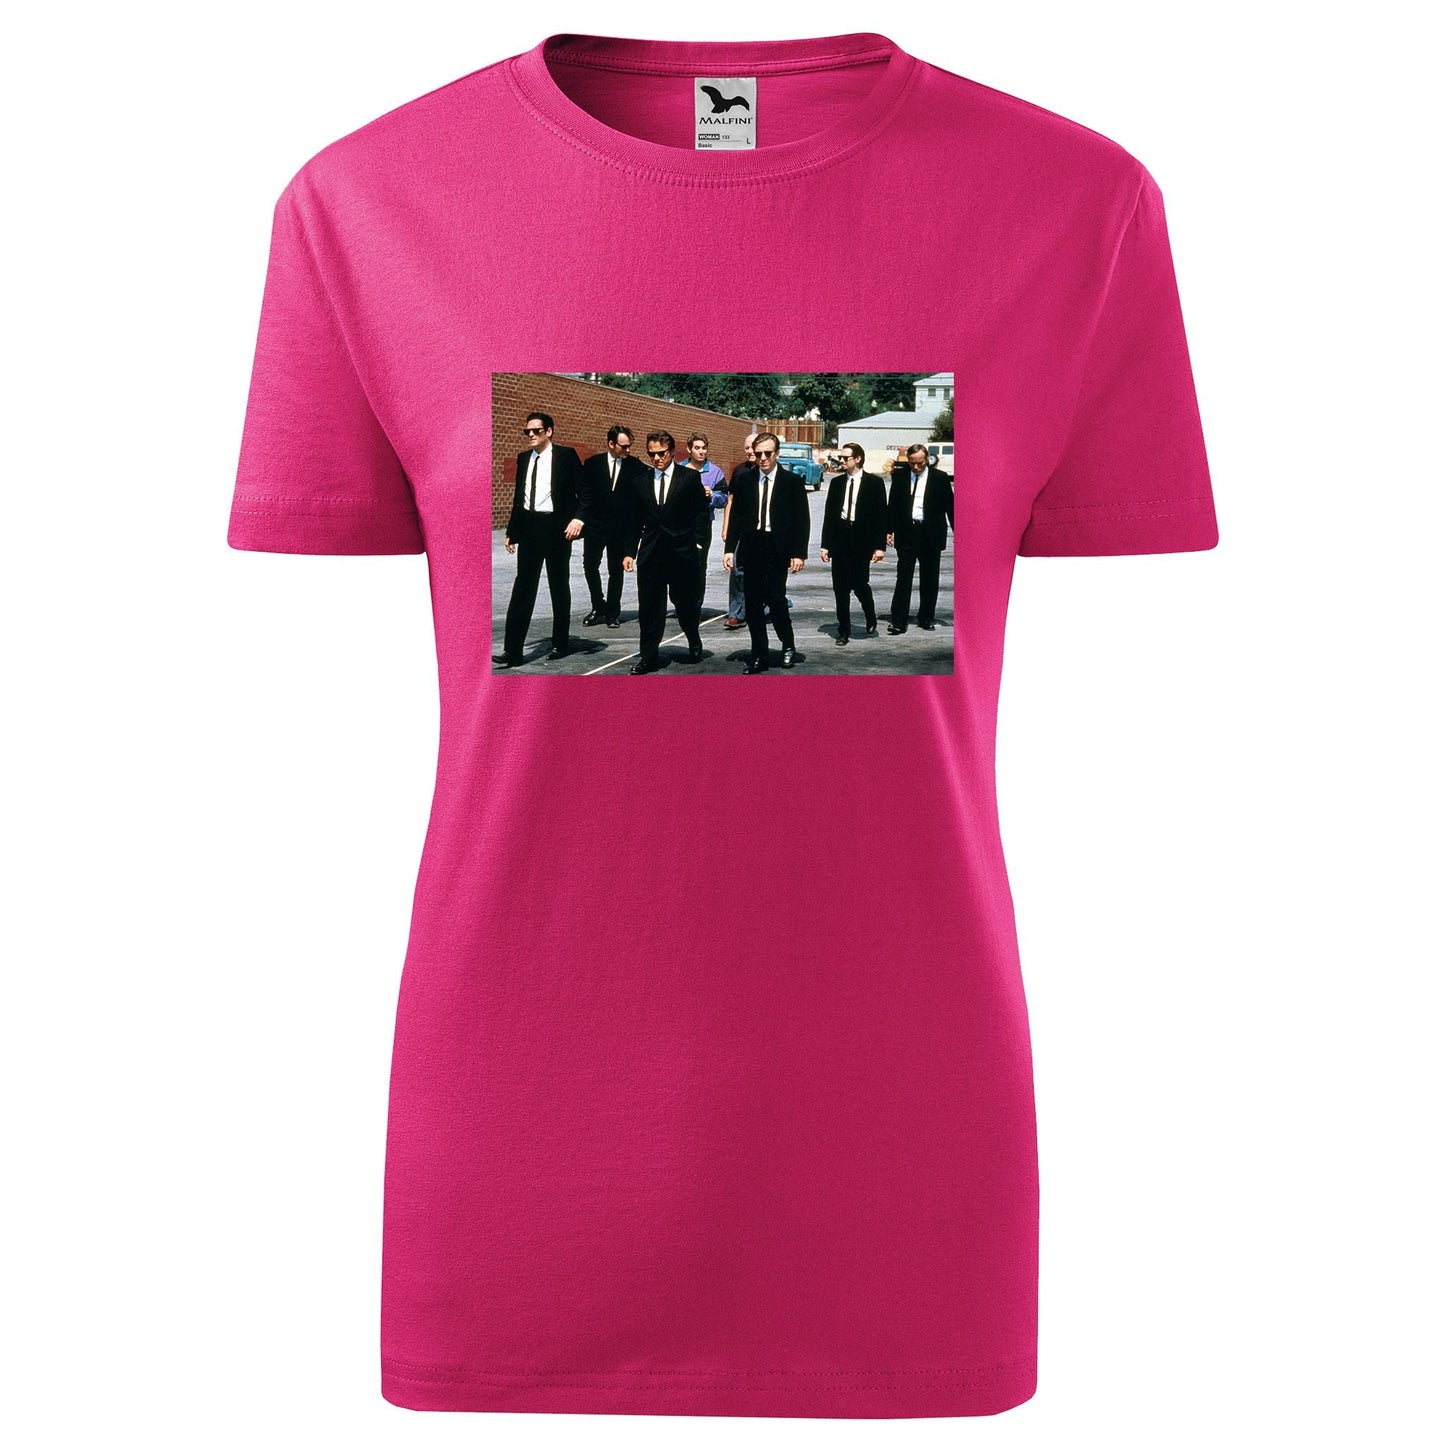 Reservoir dogs t-shirt - rvdesignprint